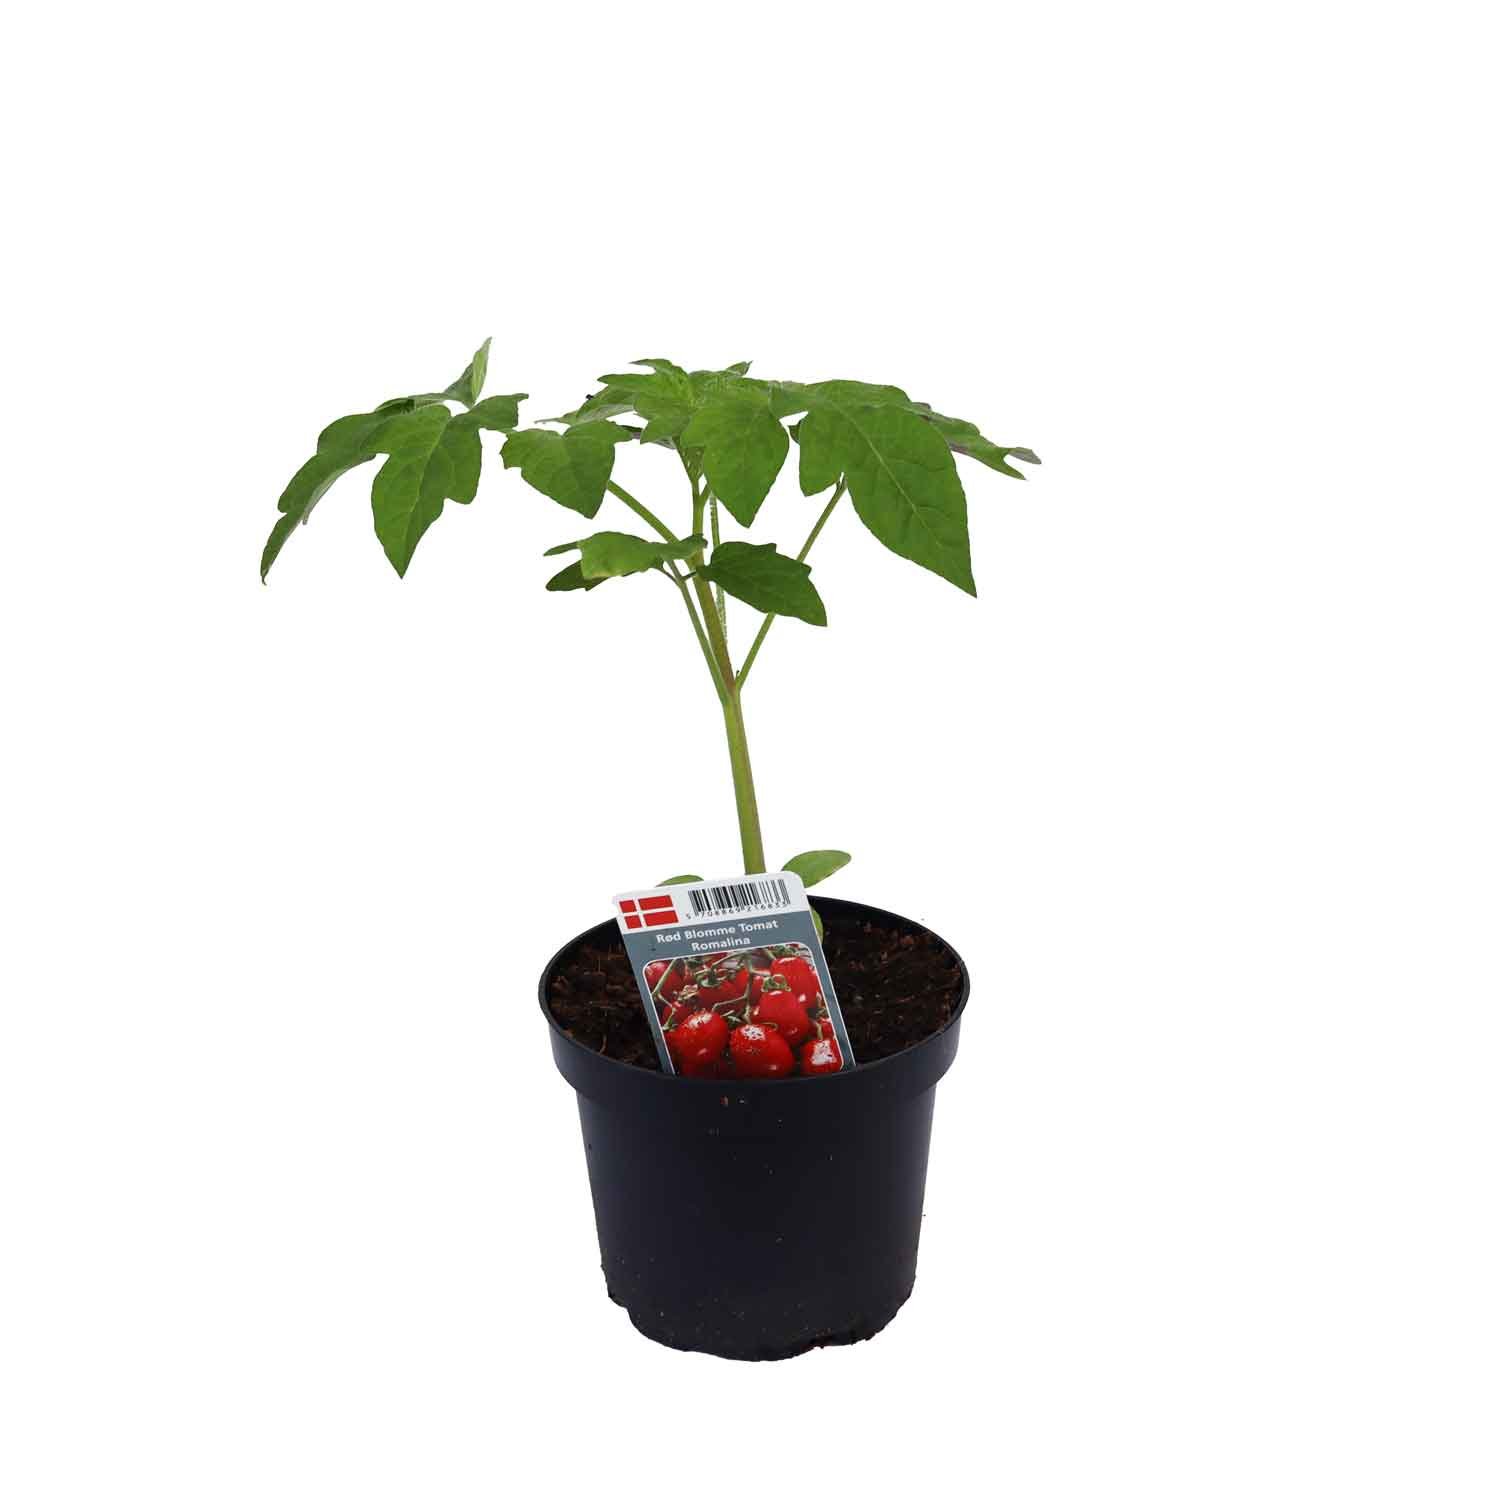 Tomat blomme Romalina 12cm pot